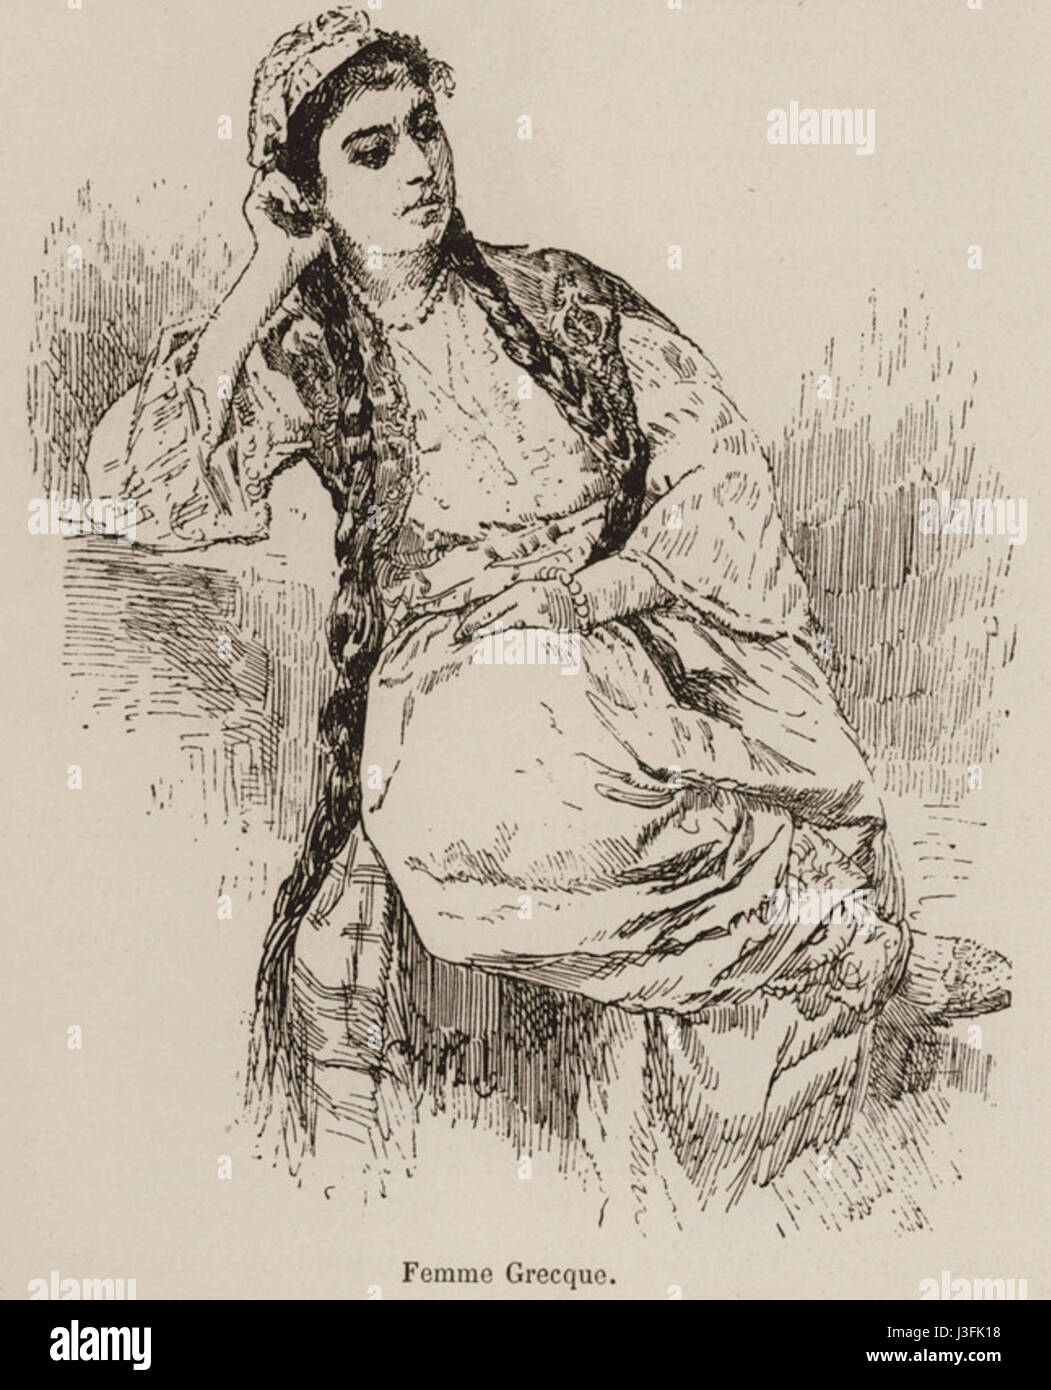 Femme Grecque   De Amicis Edmondo   1883 Stock Photo